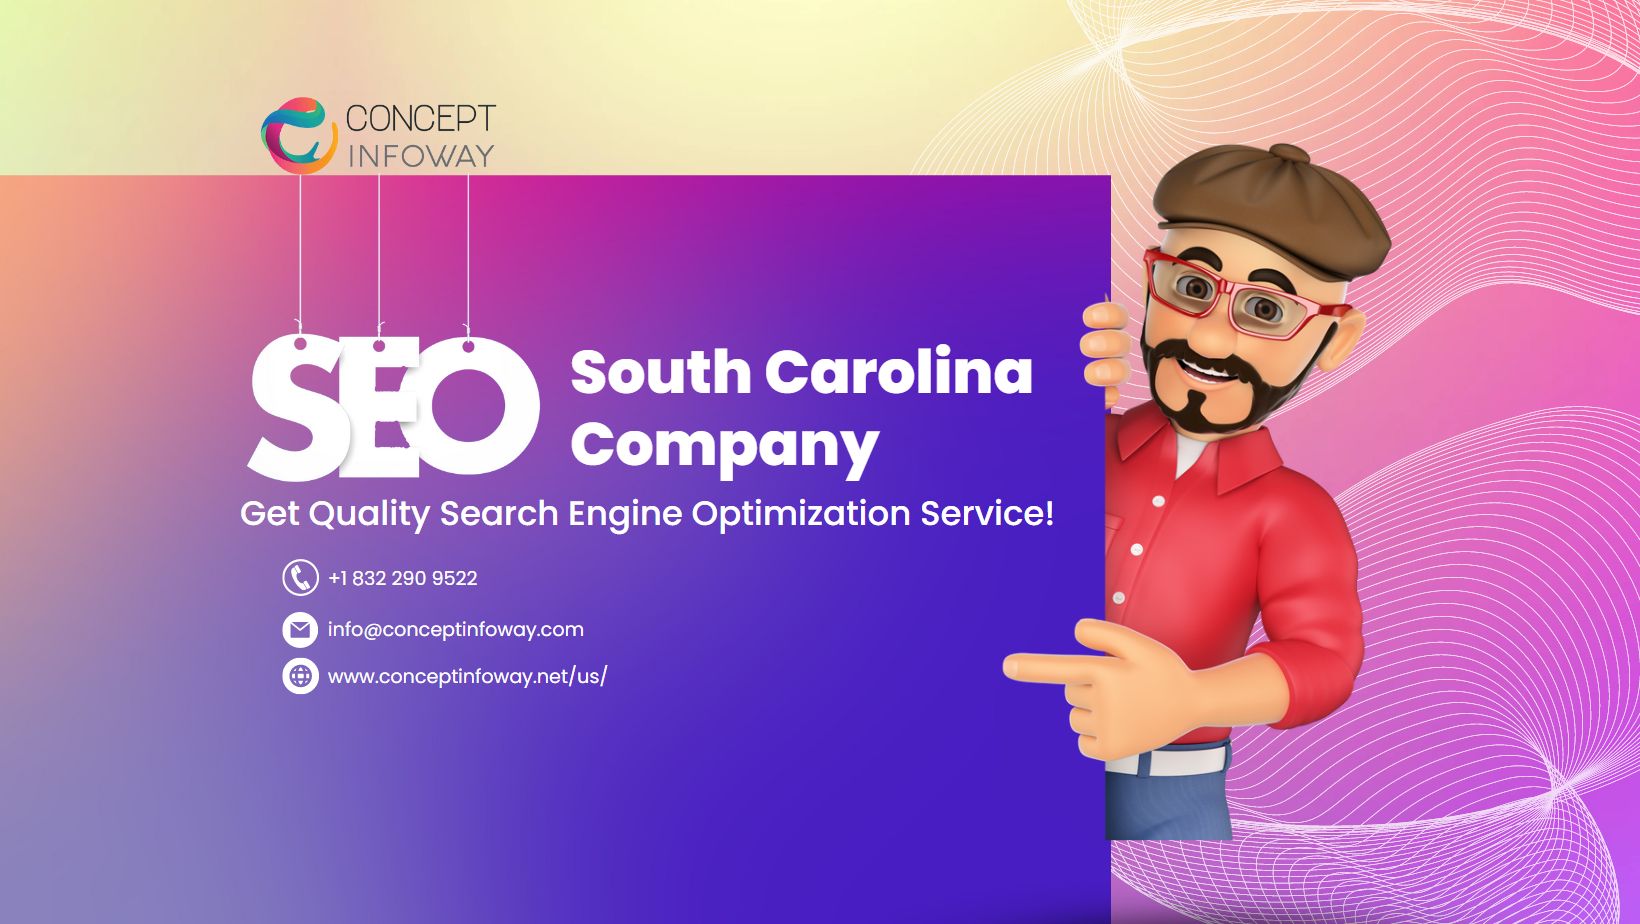 South Carolina SEO Company Services - Concept Infoway LLC